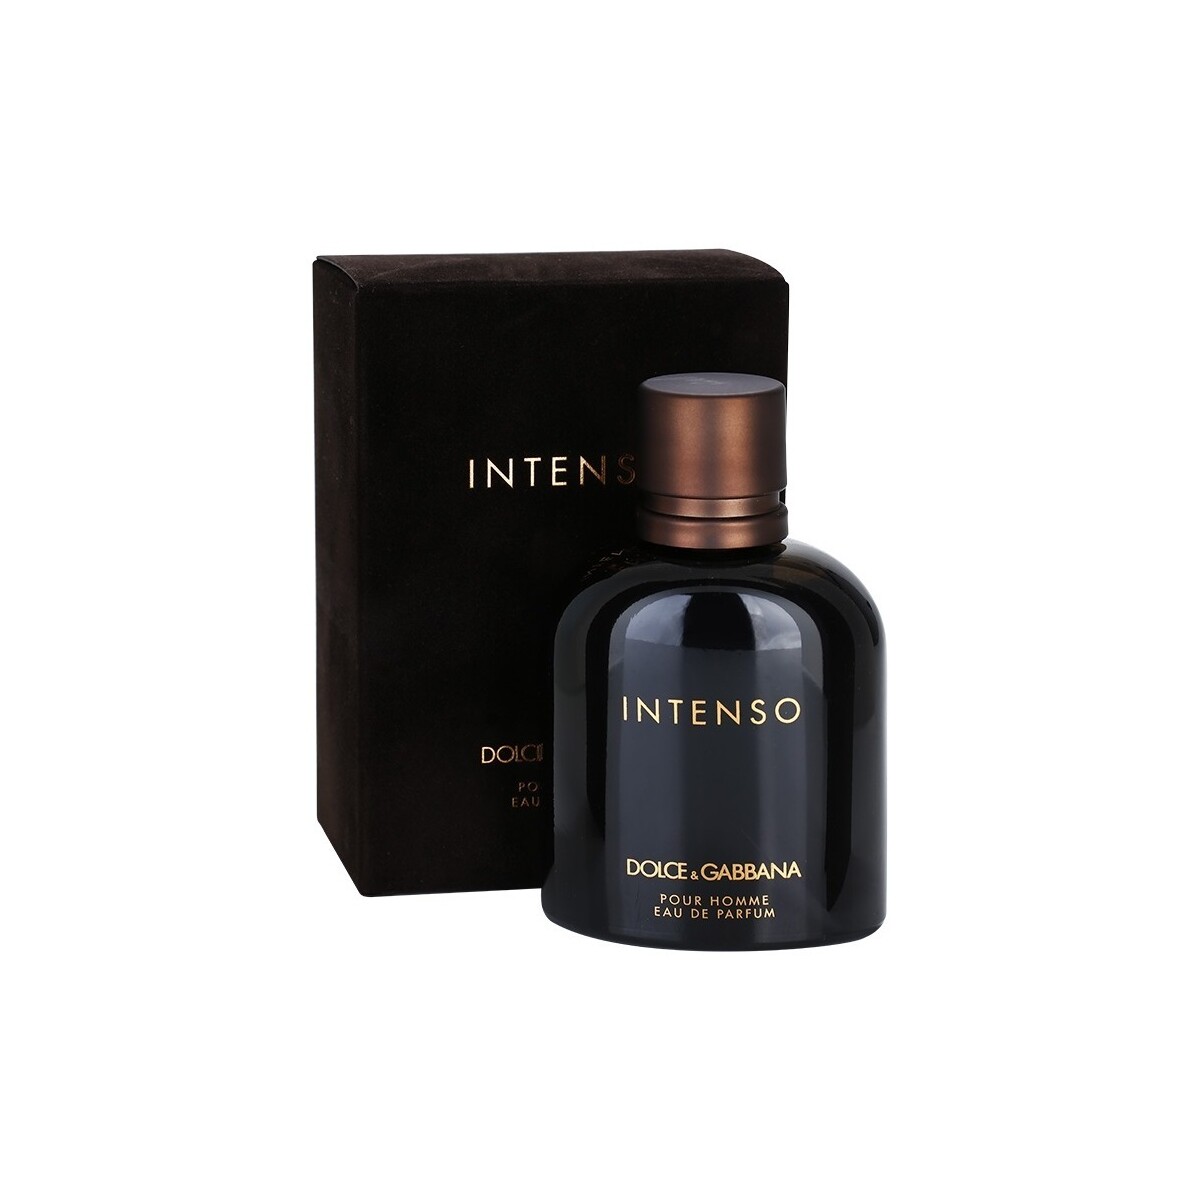 D&G Intenso - perfume - 200ml - spray Intenso - eau de parfum - 200ml - vaporisateur JQNkIso0